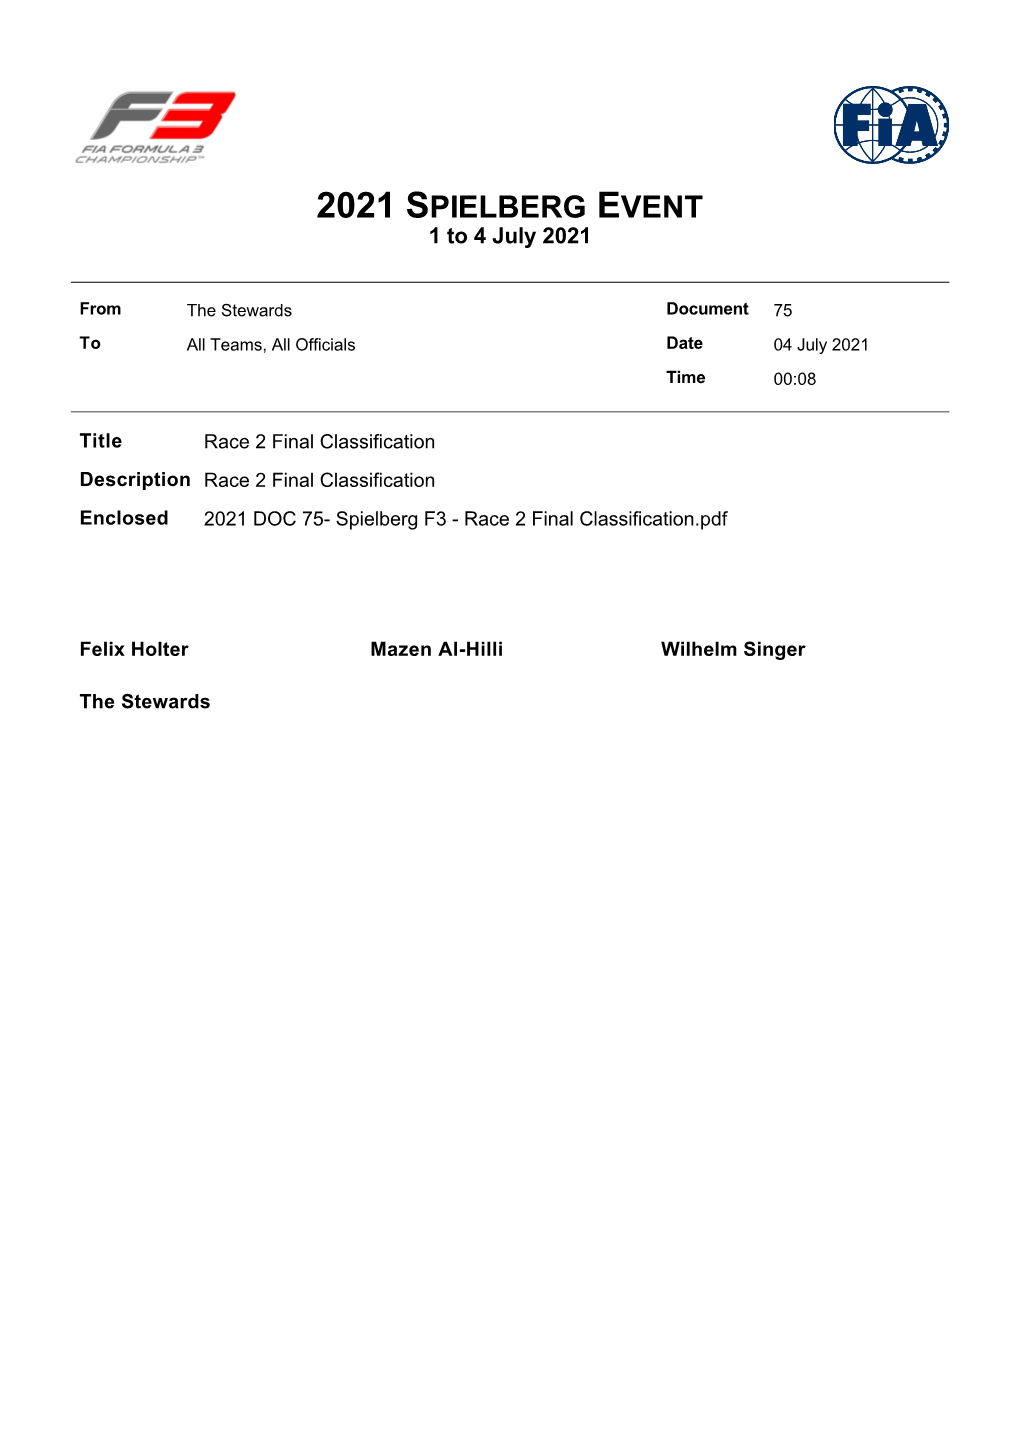 Final Classification Description Race 2 Final Classification Enclosed 2021 DOC 75- Spielberg F3 - Race 2 Final Classification.Pdf